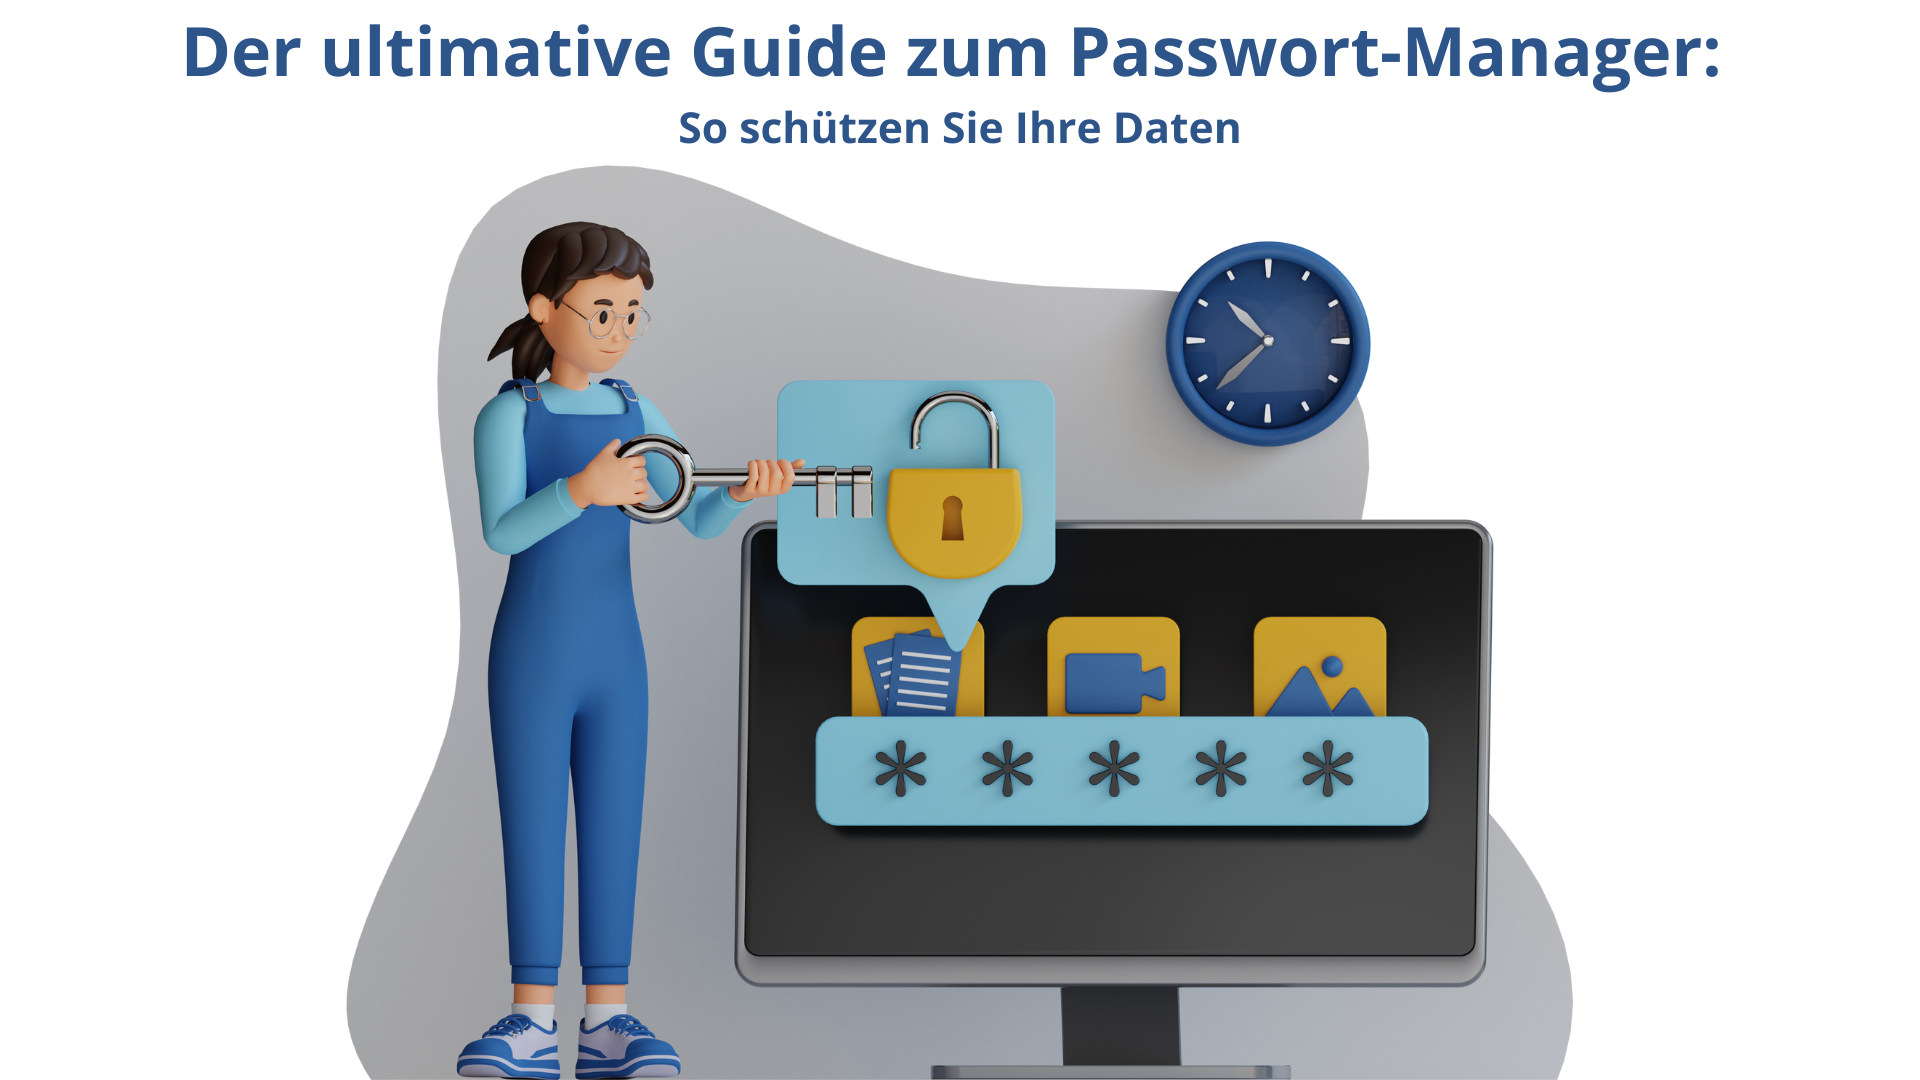 Der ultimative Guide zum Passwort-Manager: So schützen Sie Ihre Daten